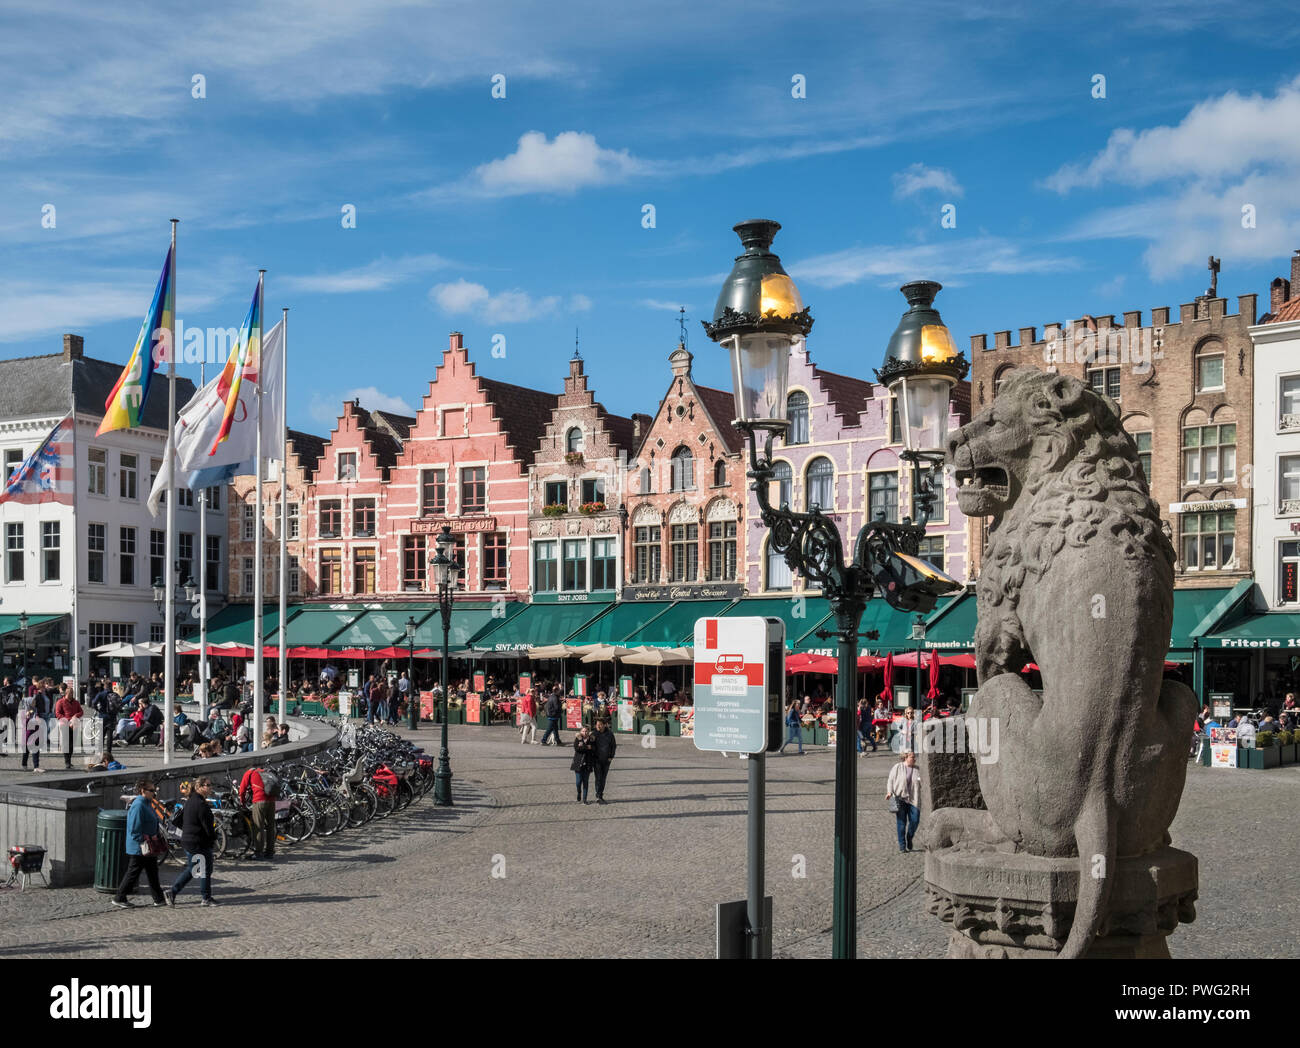 Scena di strada in piazza del mercato (Markt) dotato di architettura tradizionale nella città medievale di Bruges, Fiandre Occidentali, Belgio Foto Stock